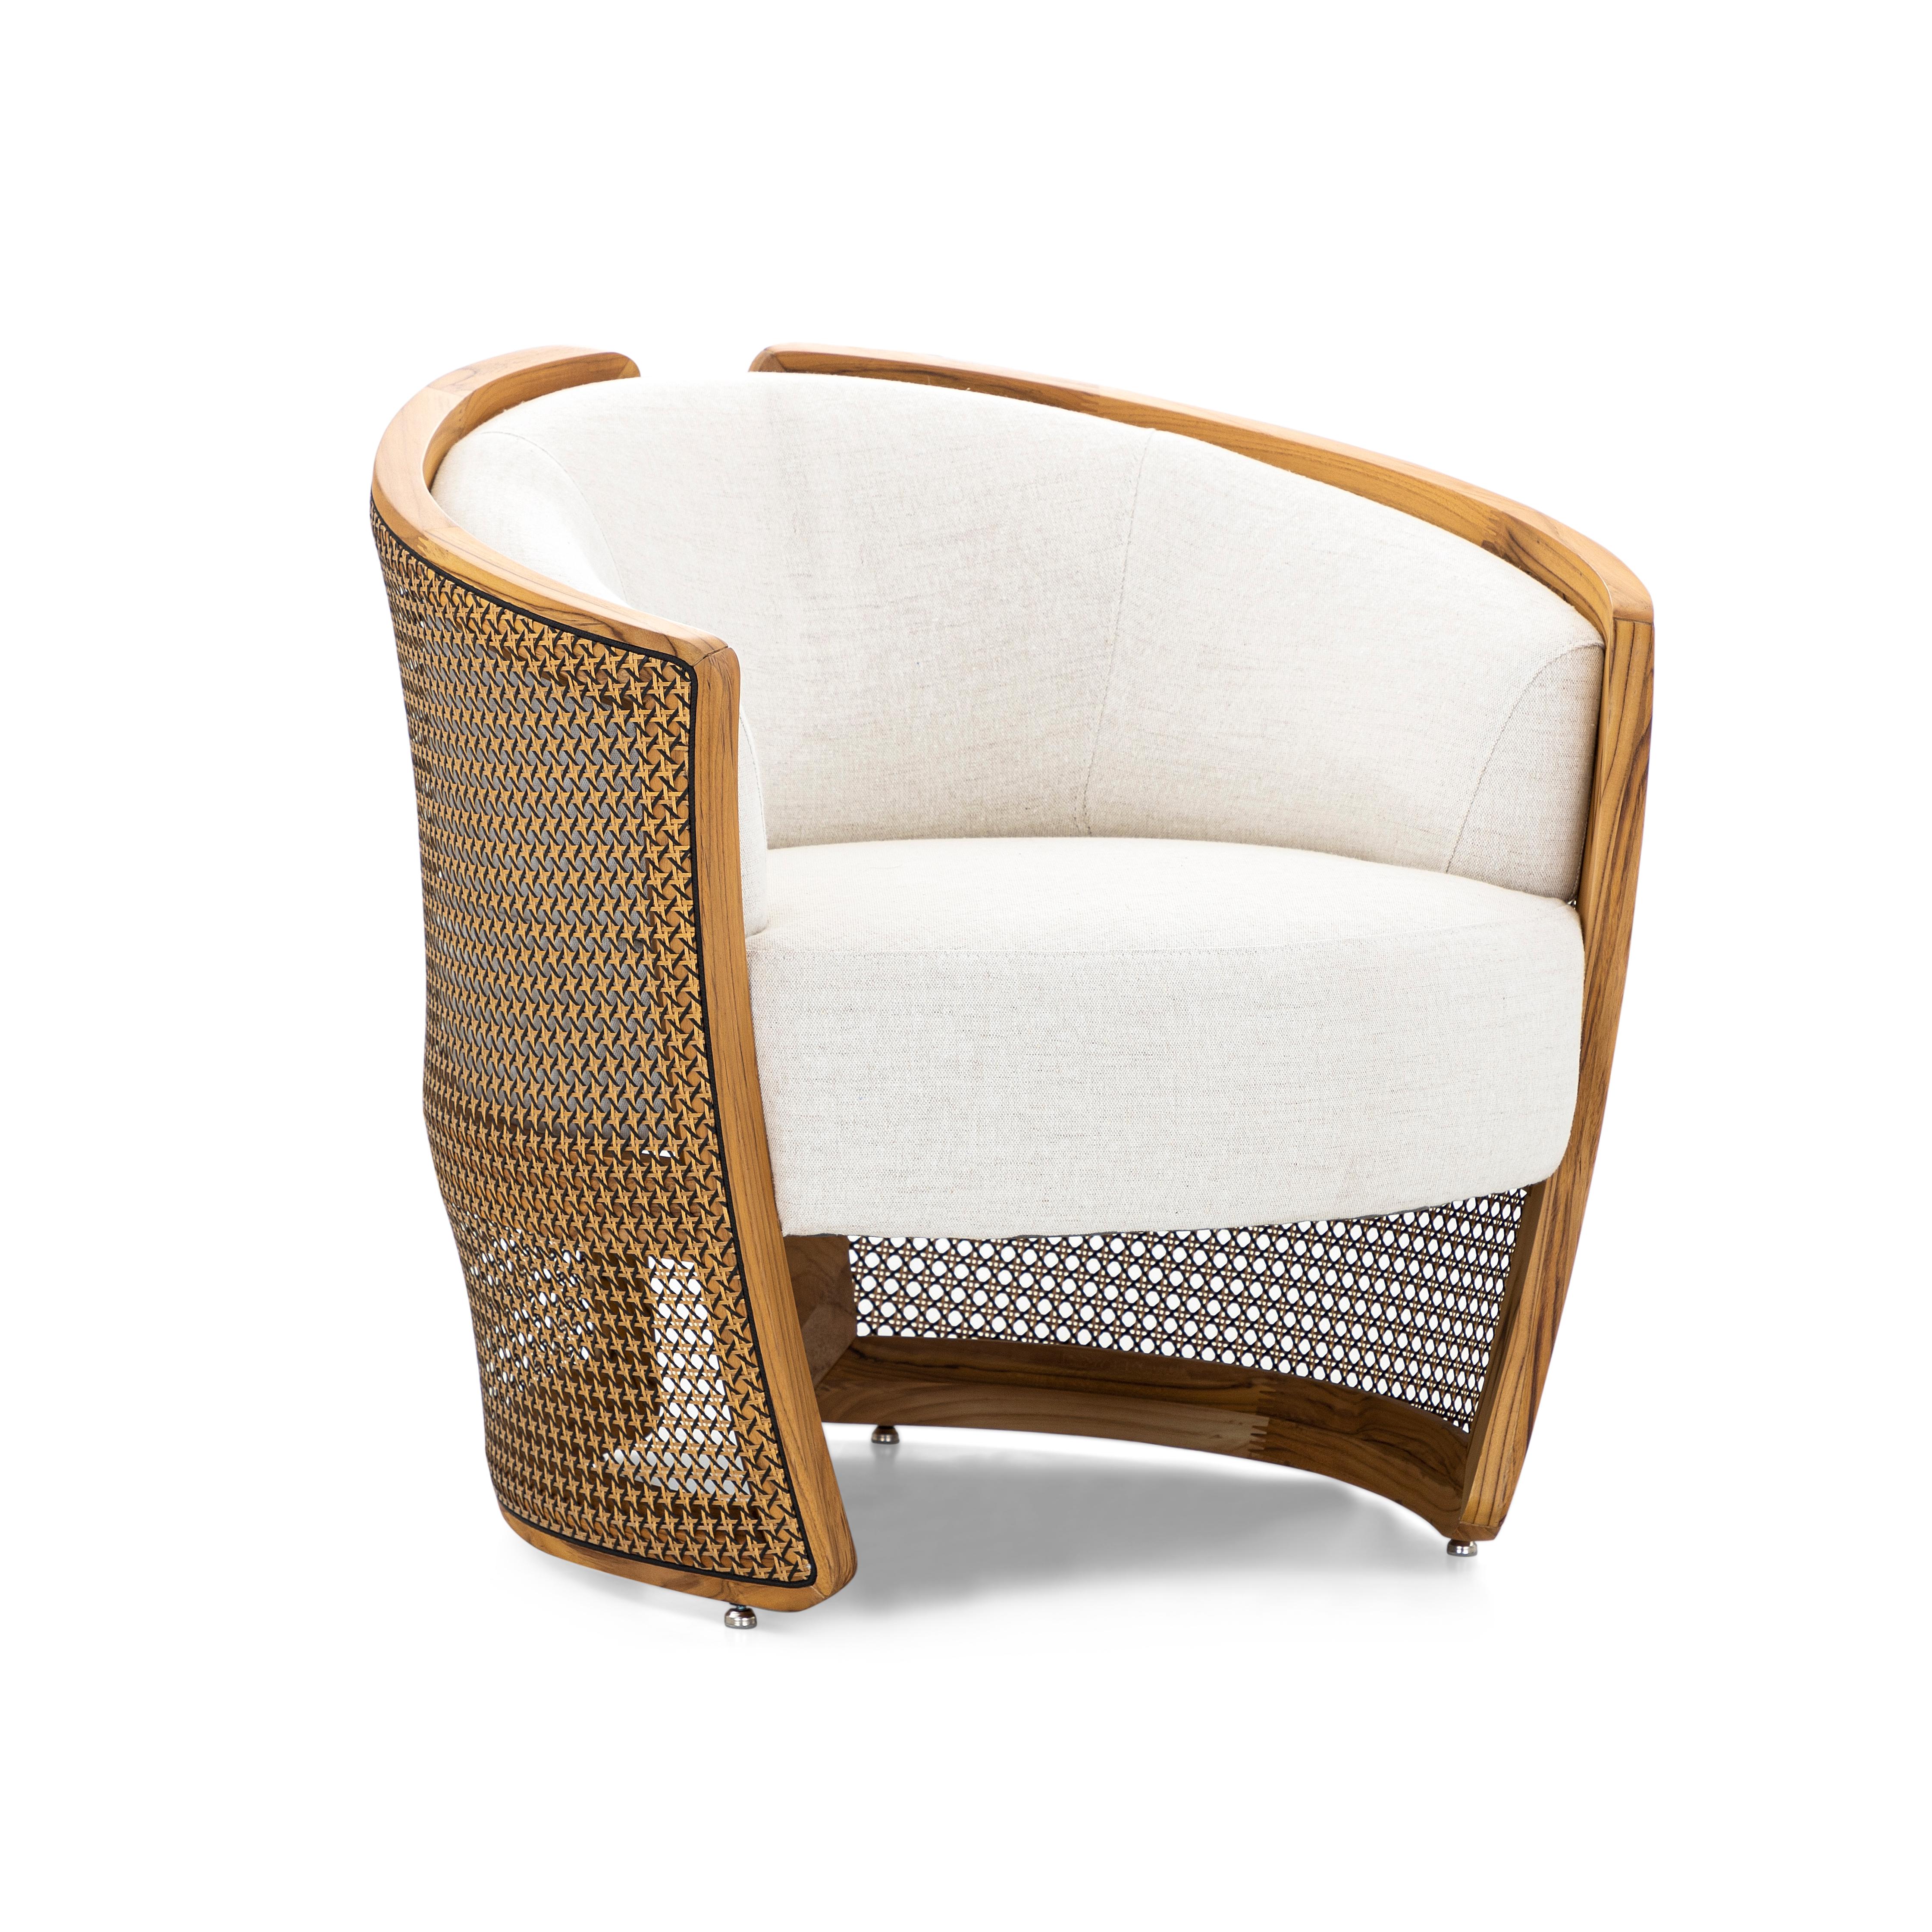 Réimaginant la fleur à l'origine de son nom, le Lys, le fauteuil Lírio d'Uultis associe des formes organiques et le confort d'une étreinte que seule la nature peut offrir.
Sa structure est composée d'un cadre en bois, d'une assise et d'un dossier